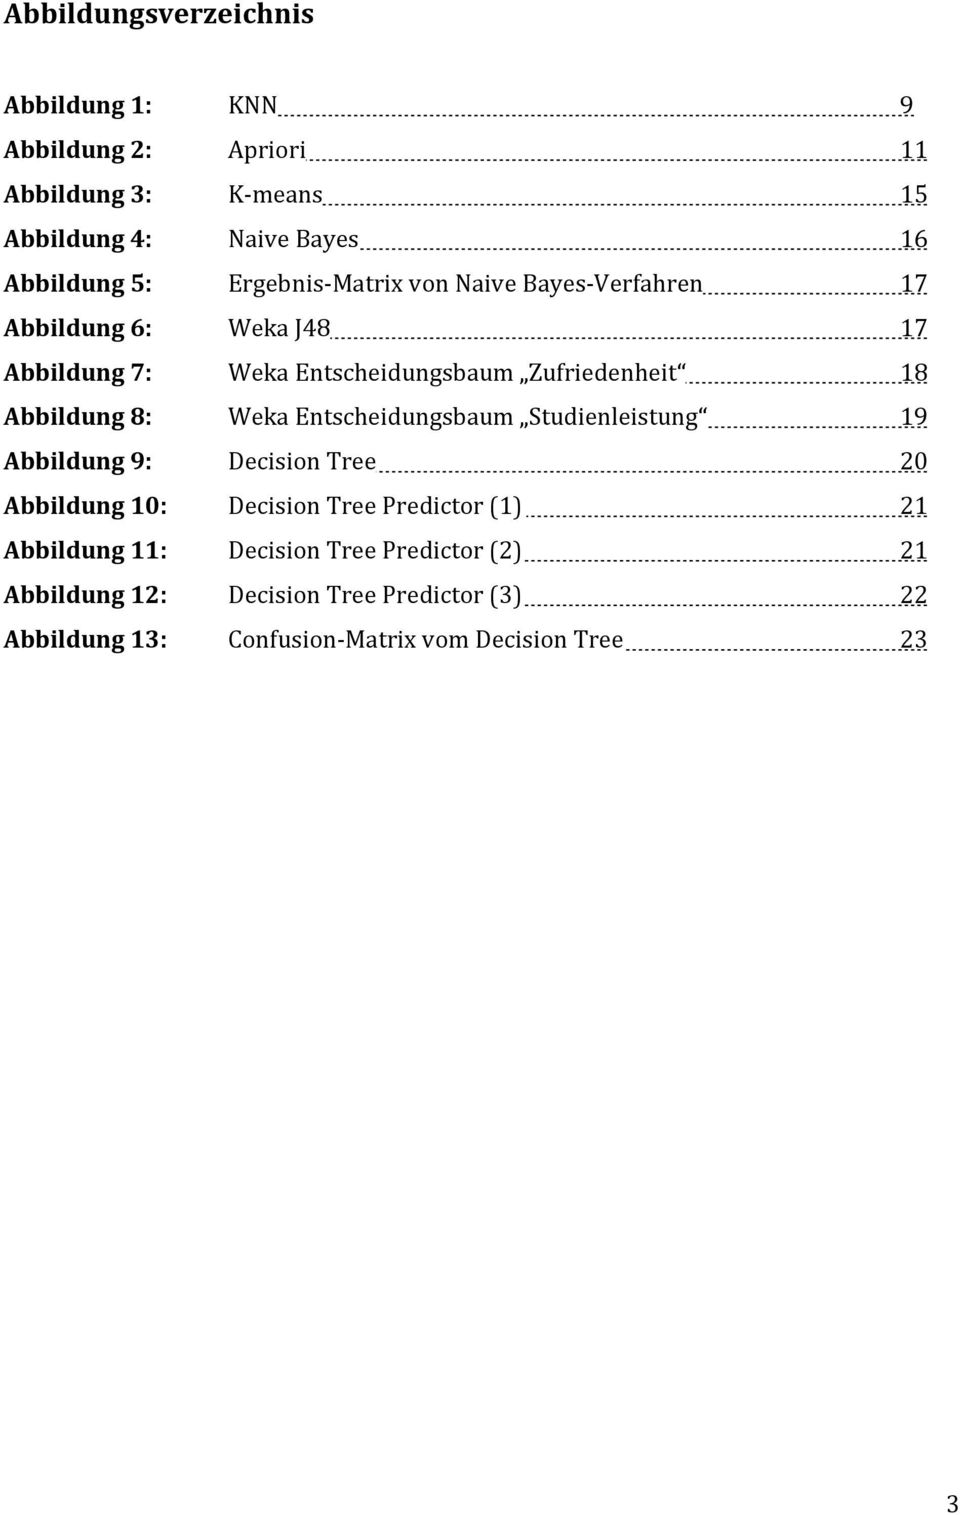 Abbildung 8: Weka Entscheidungsbaum Studienleistung 19 Abbildung 9: Decision Tree 20 Abbildung 10: Decision Tree Predictor (1) 21